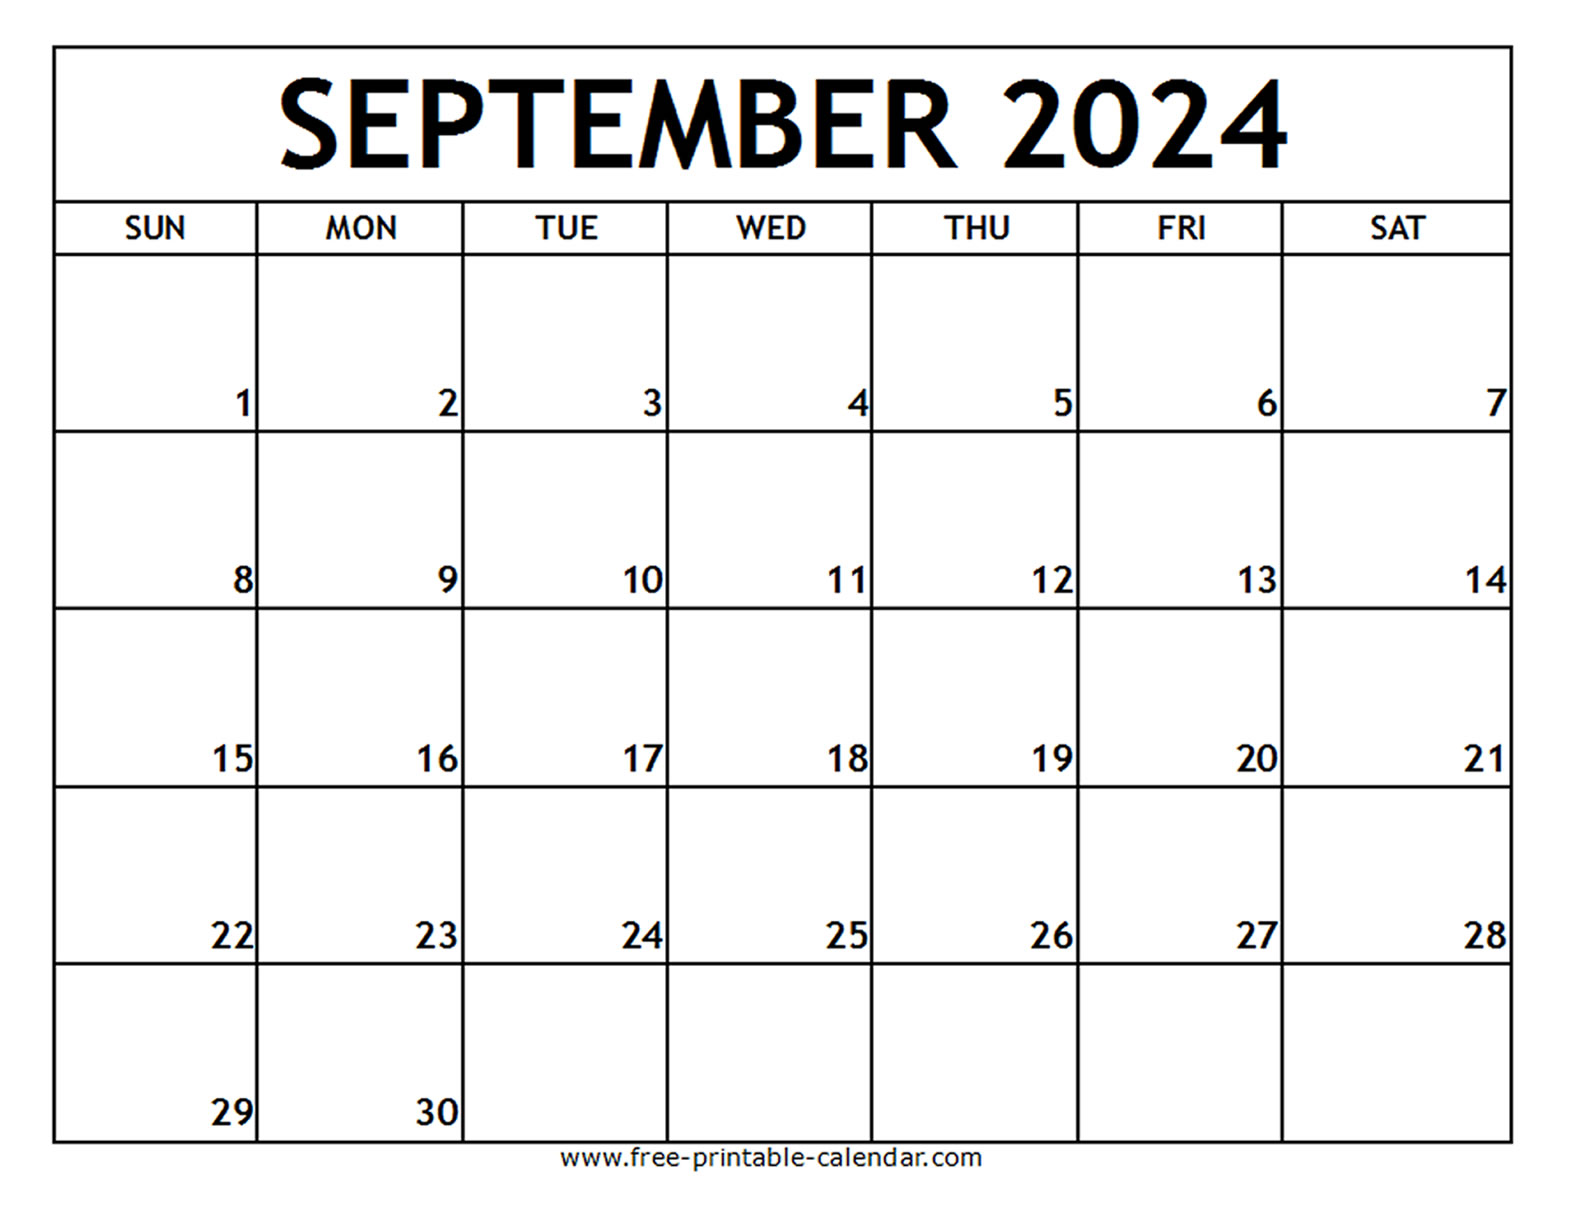 September 2024 Printable Calendar - Free-printable-calendar.com